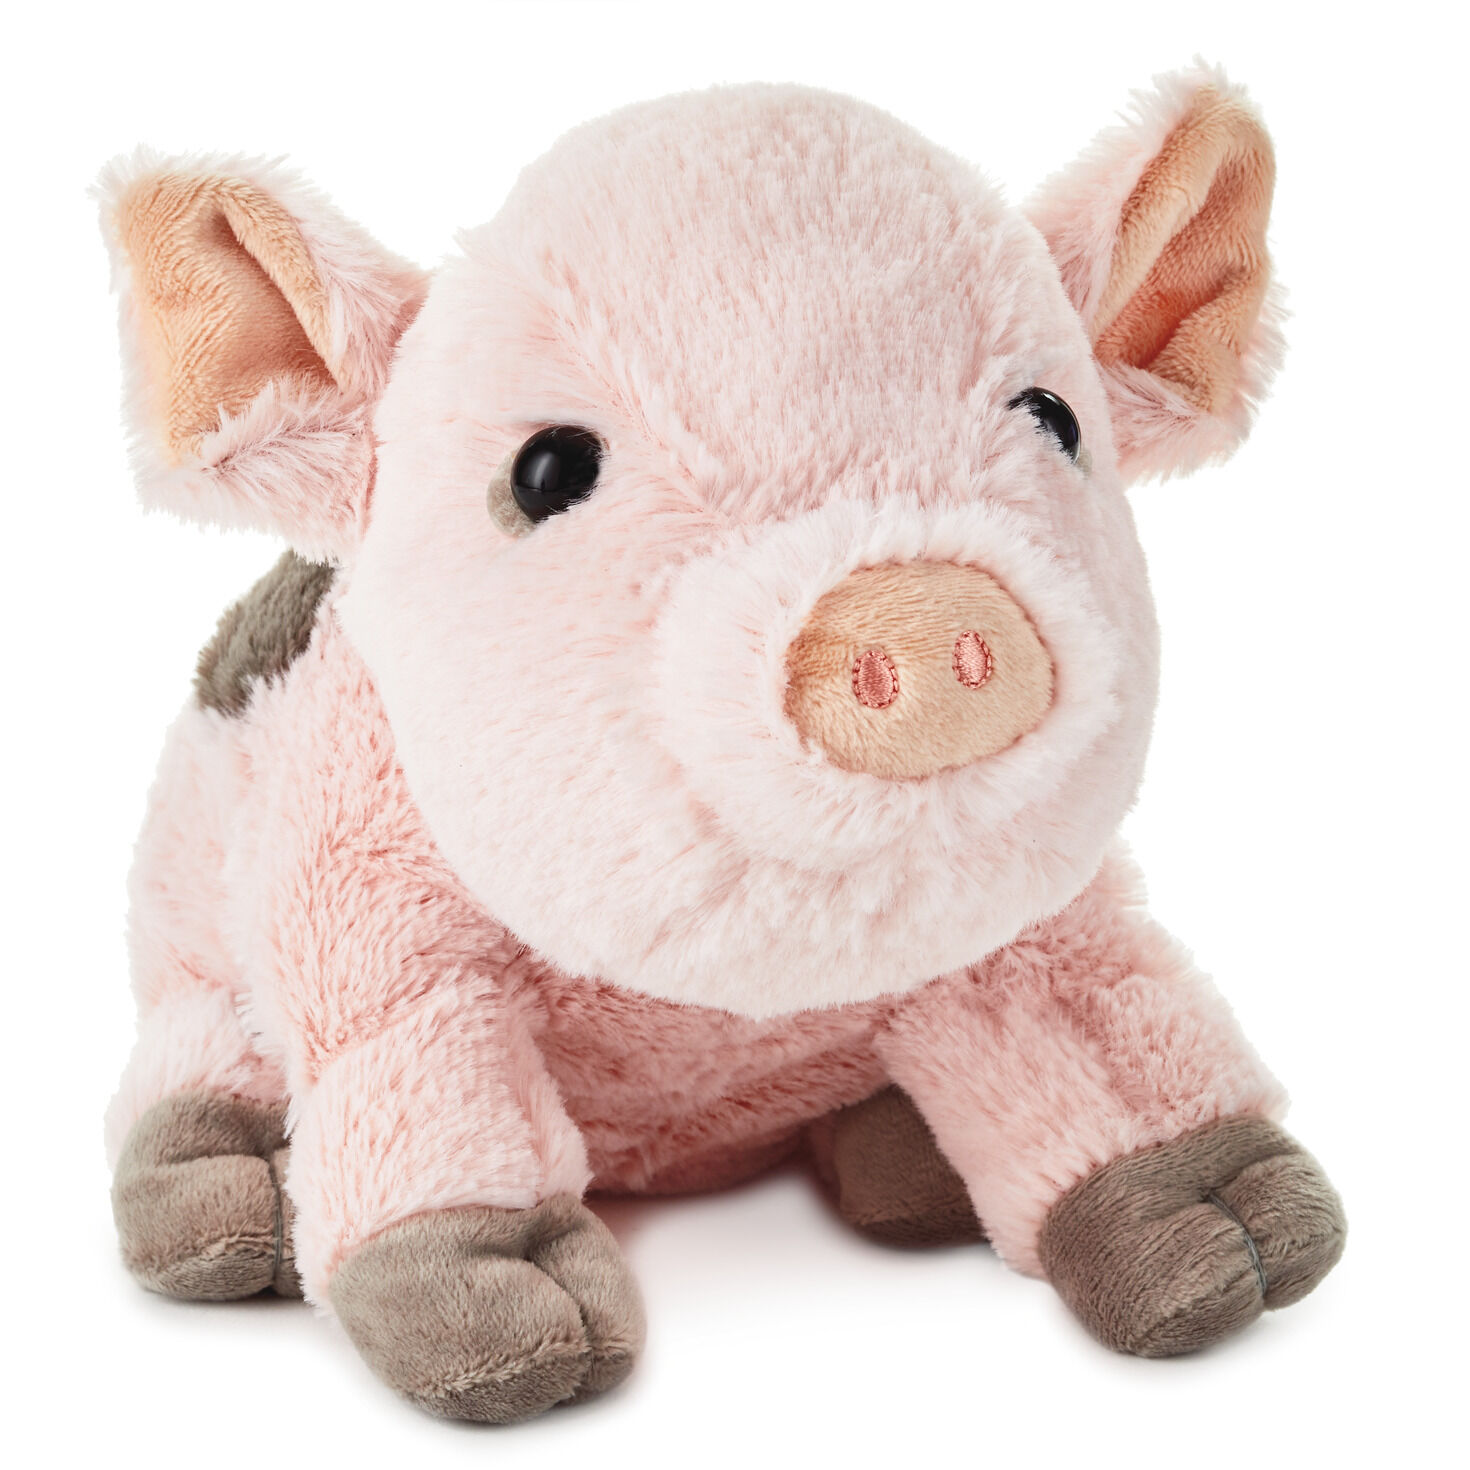 teacup pig stuffed animal